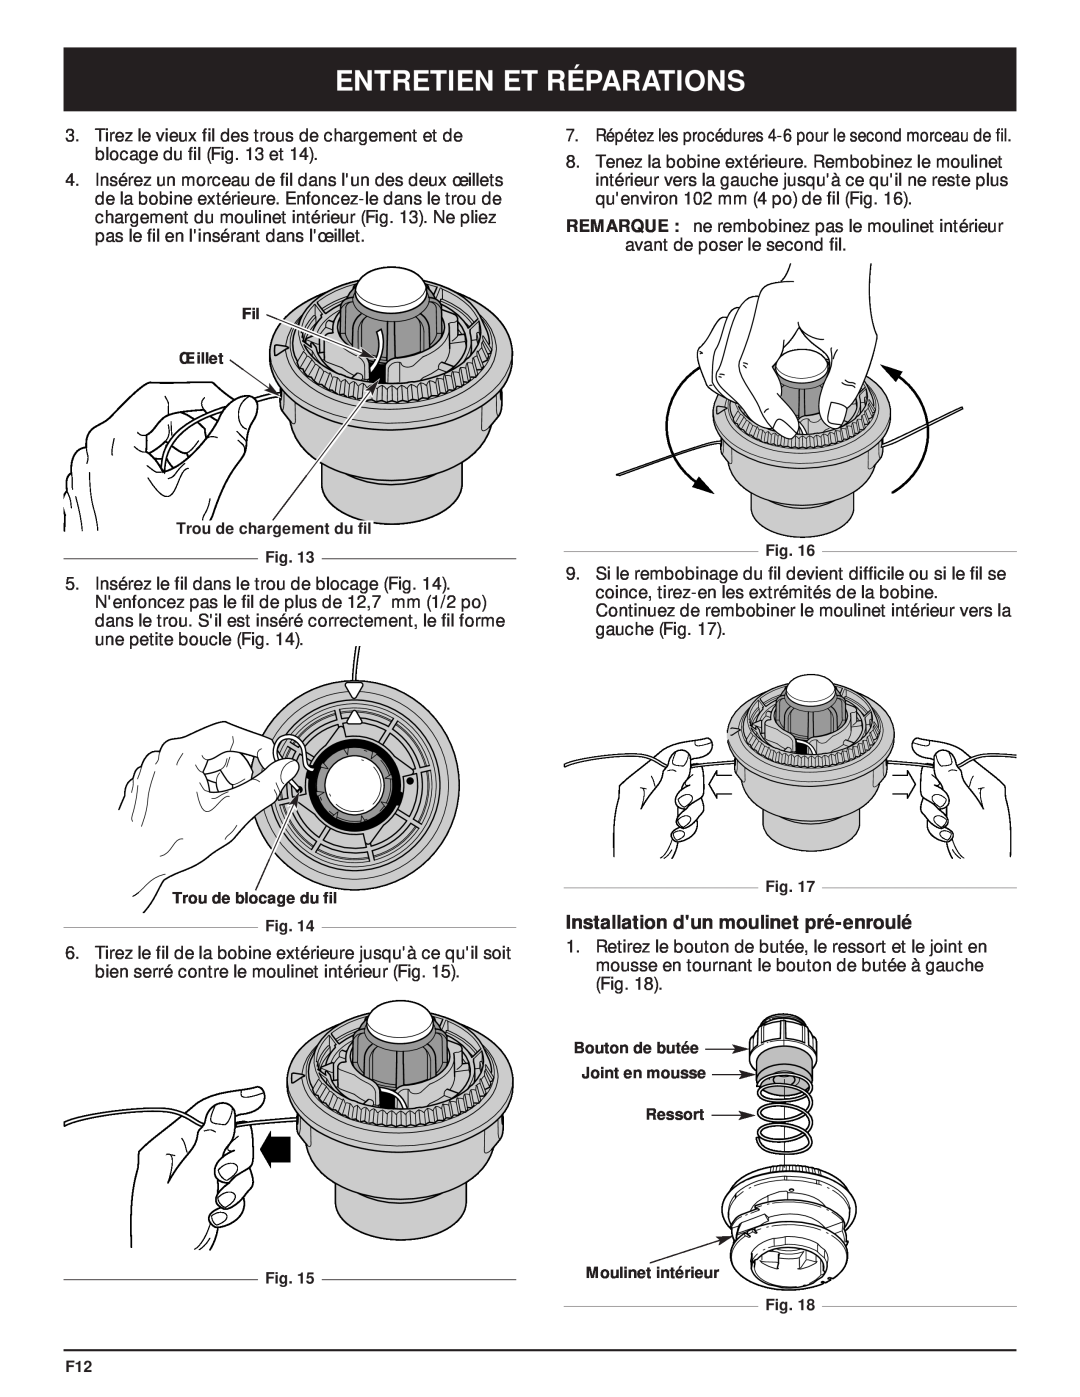 McCulloch MT705 manual Installation dun moulinet pré-enroulé, Entretien Et Réparations 